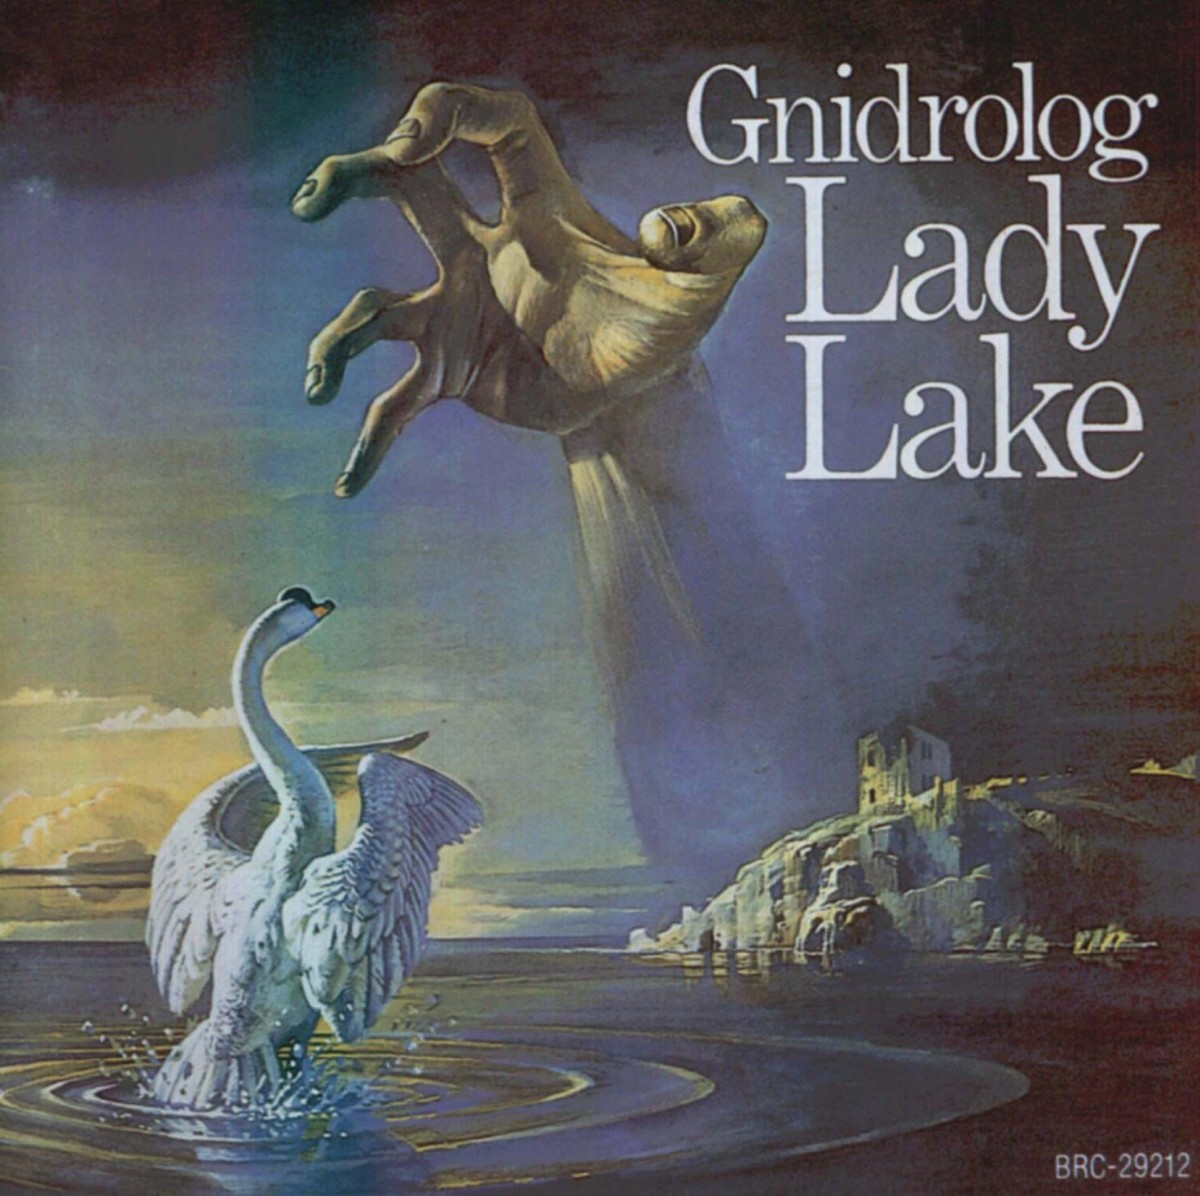 ¿Qué estáis escuchando ahora? - Página 19 Gnidrolog-lady-lake-1972